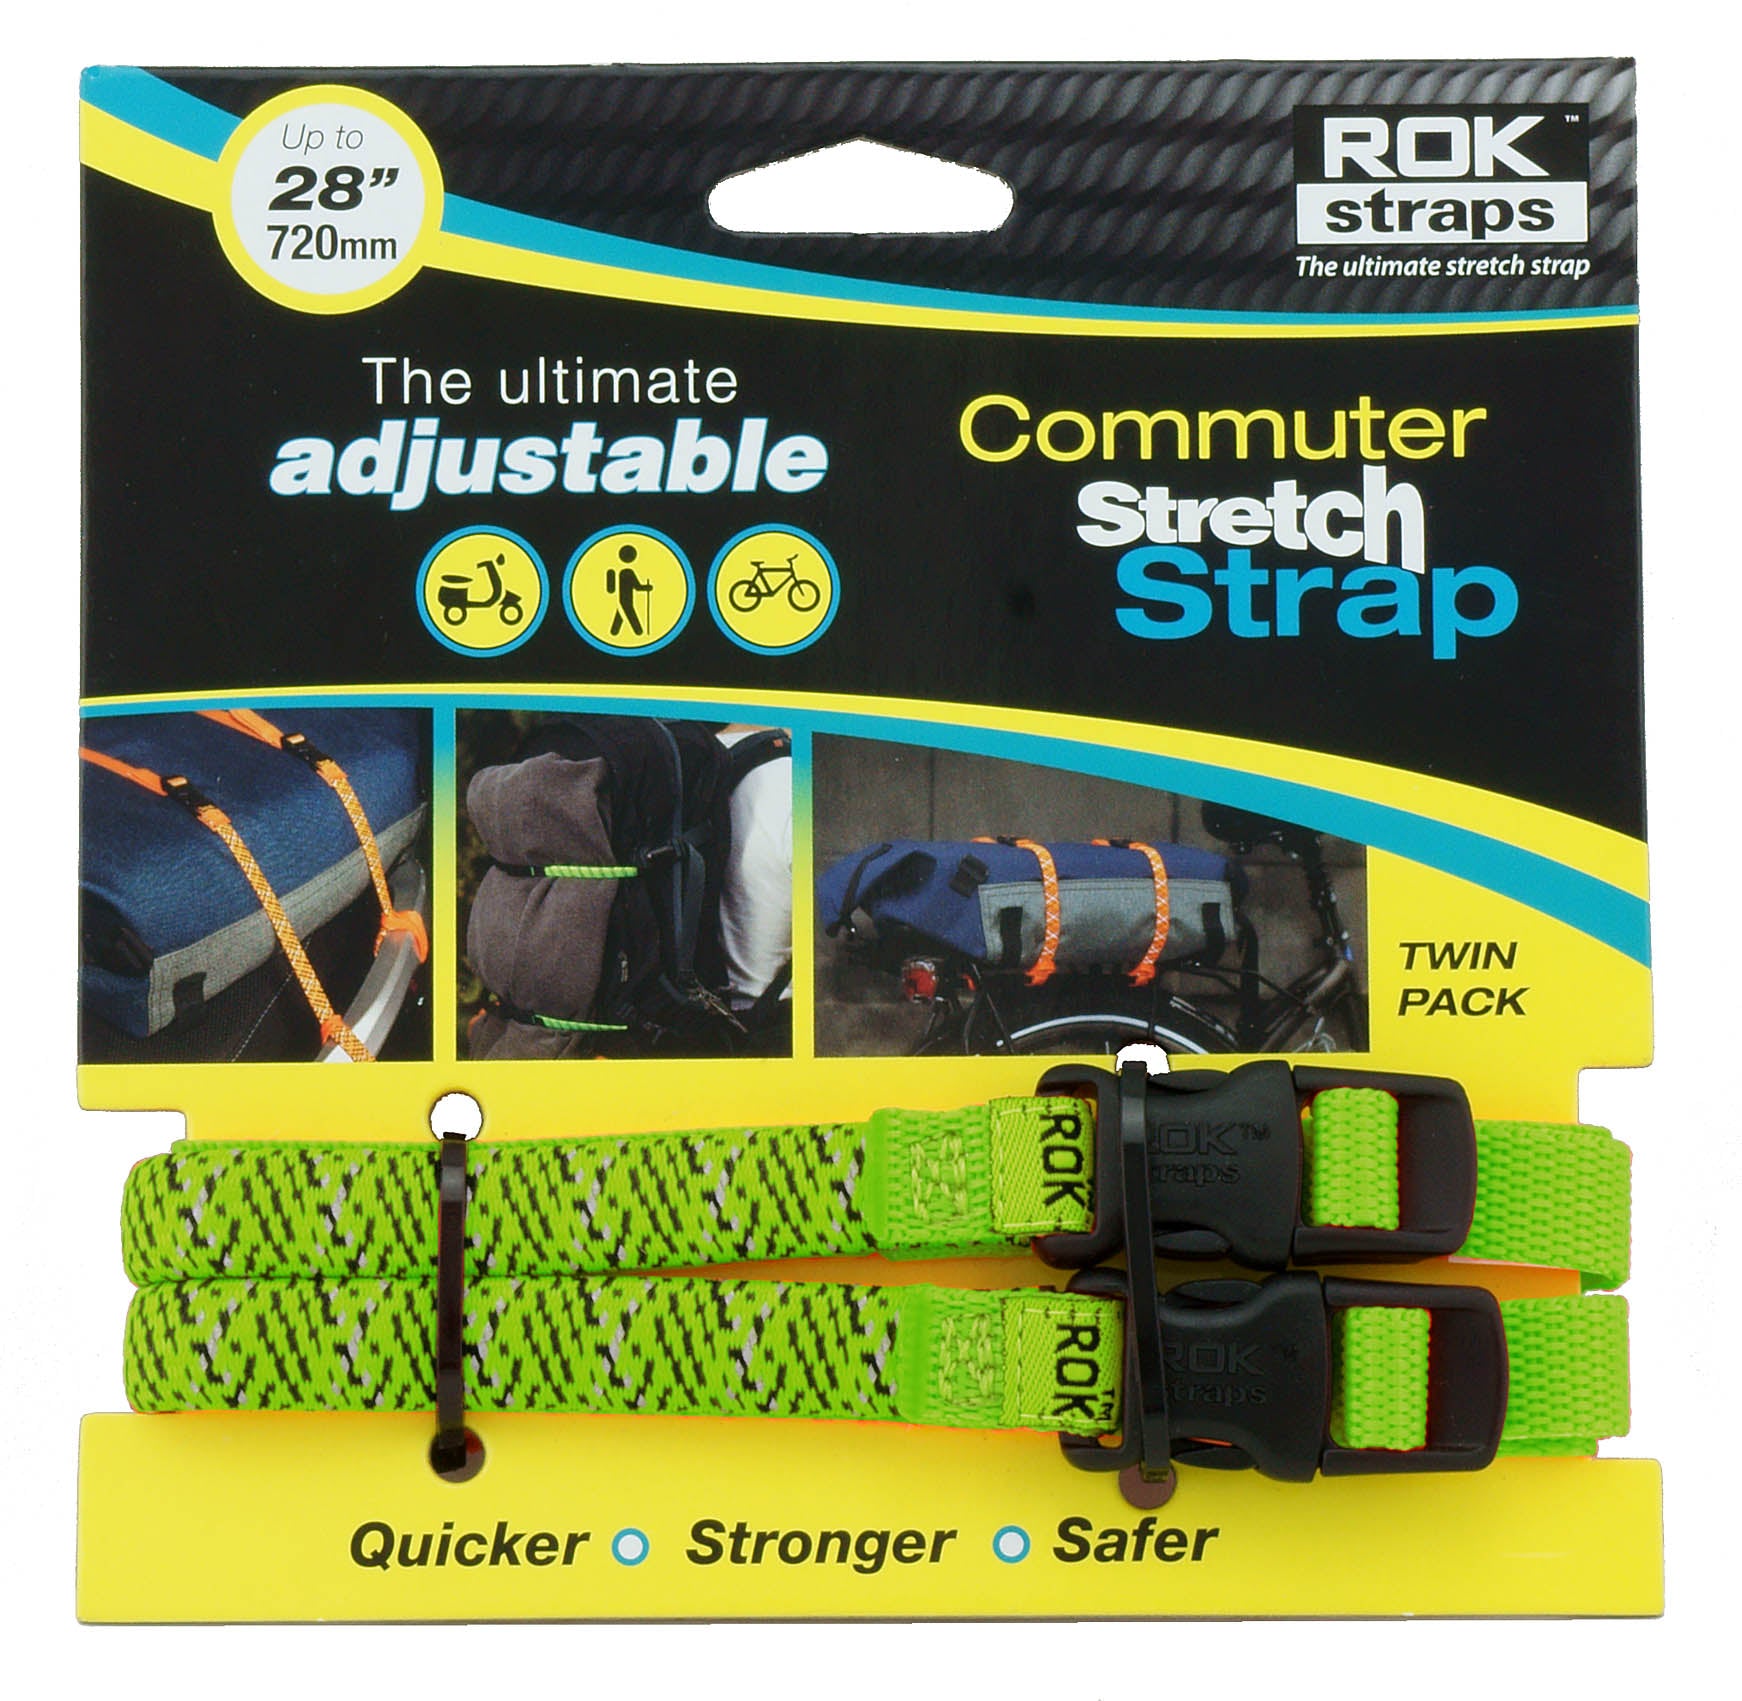 ROK Straps Adjustable Commuter Straps for light loads